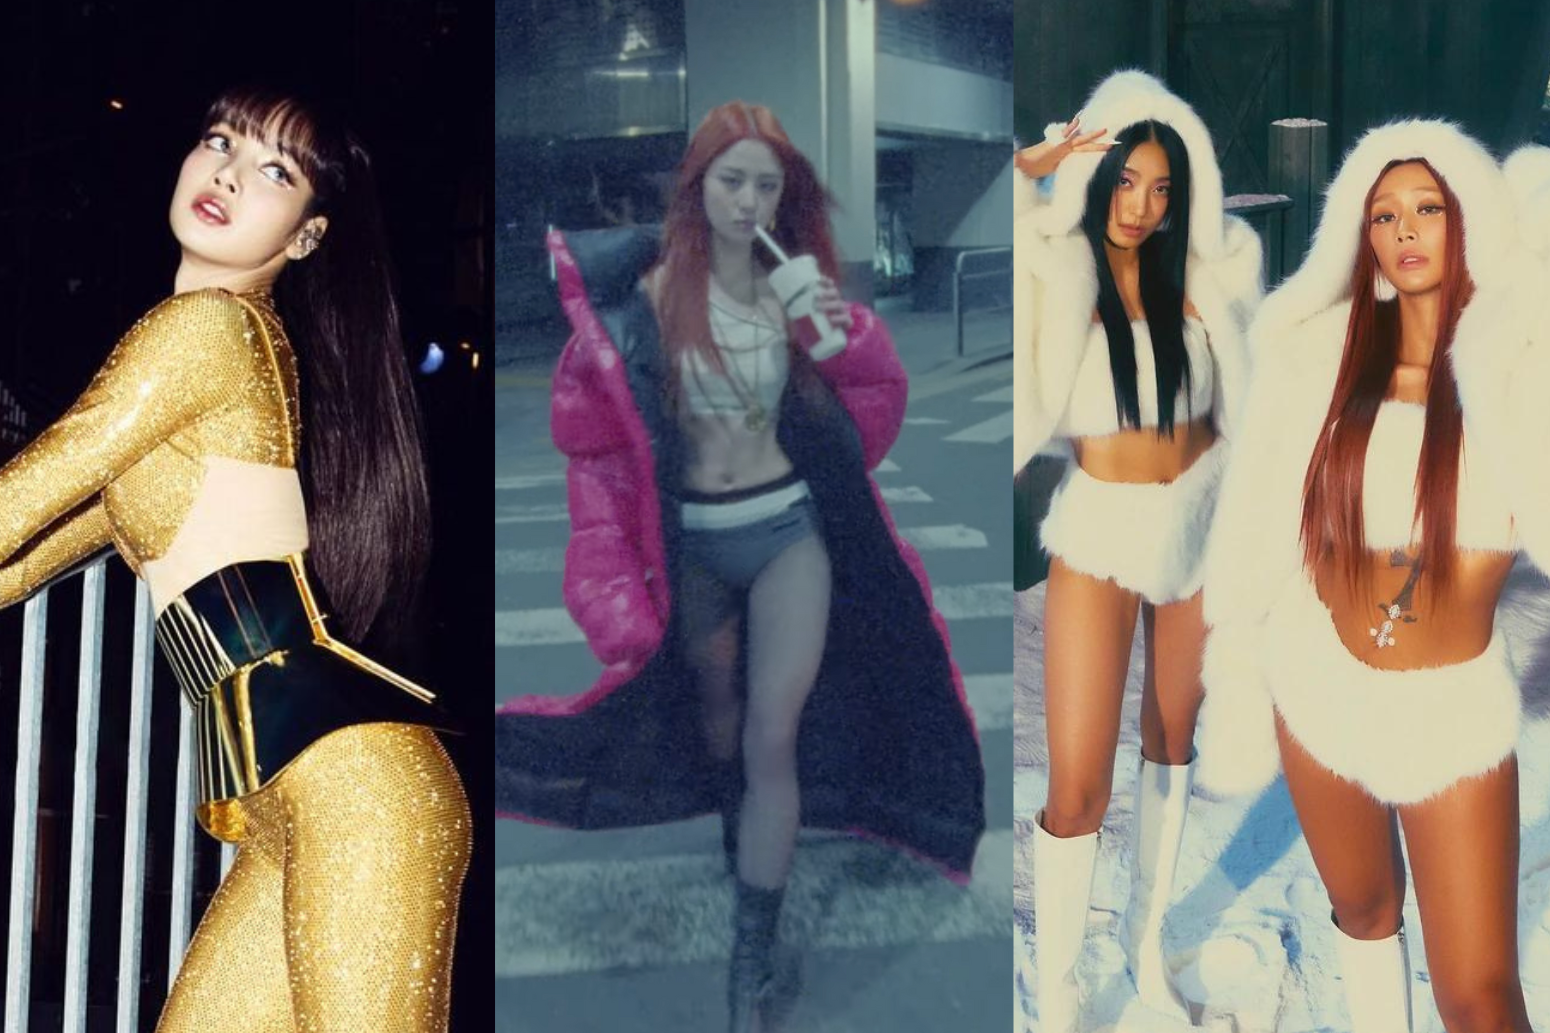 Too hot to handle? K-pop stars’ ‘no pants’ look sparks debate